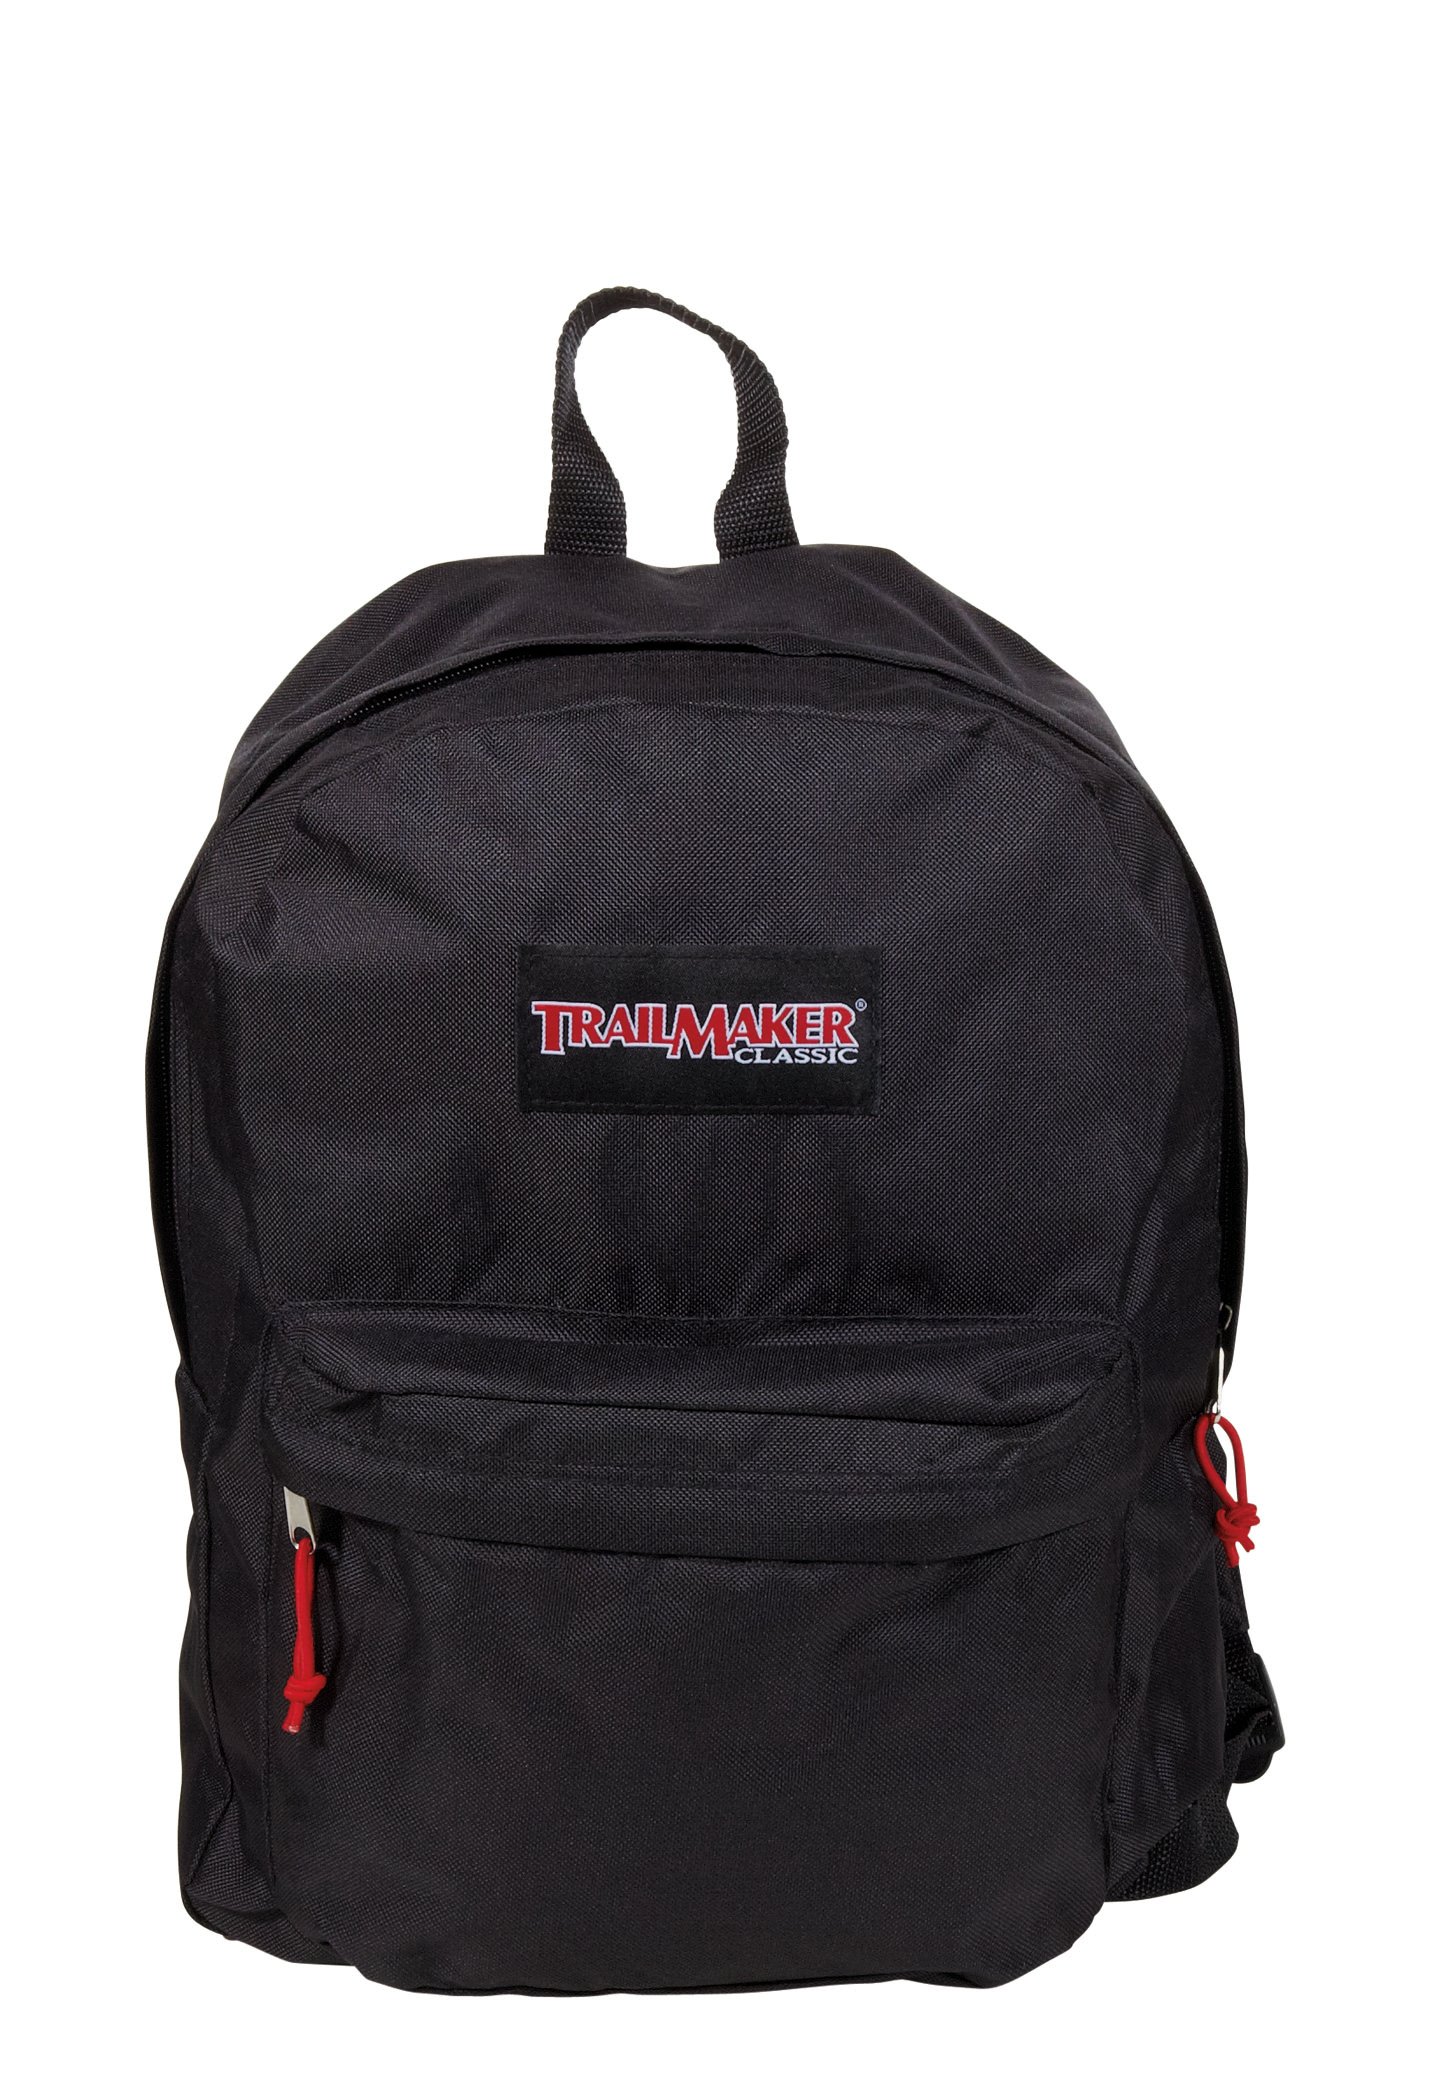 Trailmaker Backpack, Black - Shop Backpacks at H-E-B